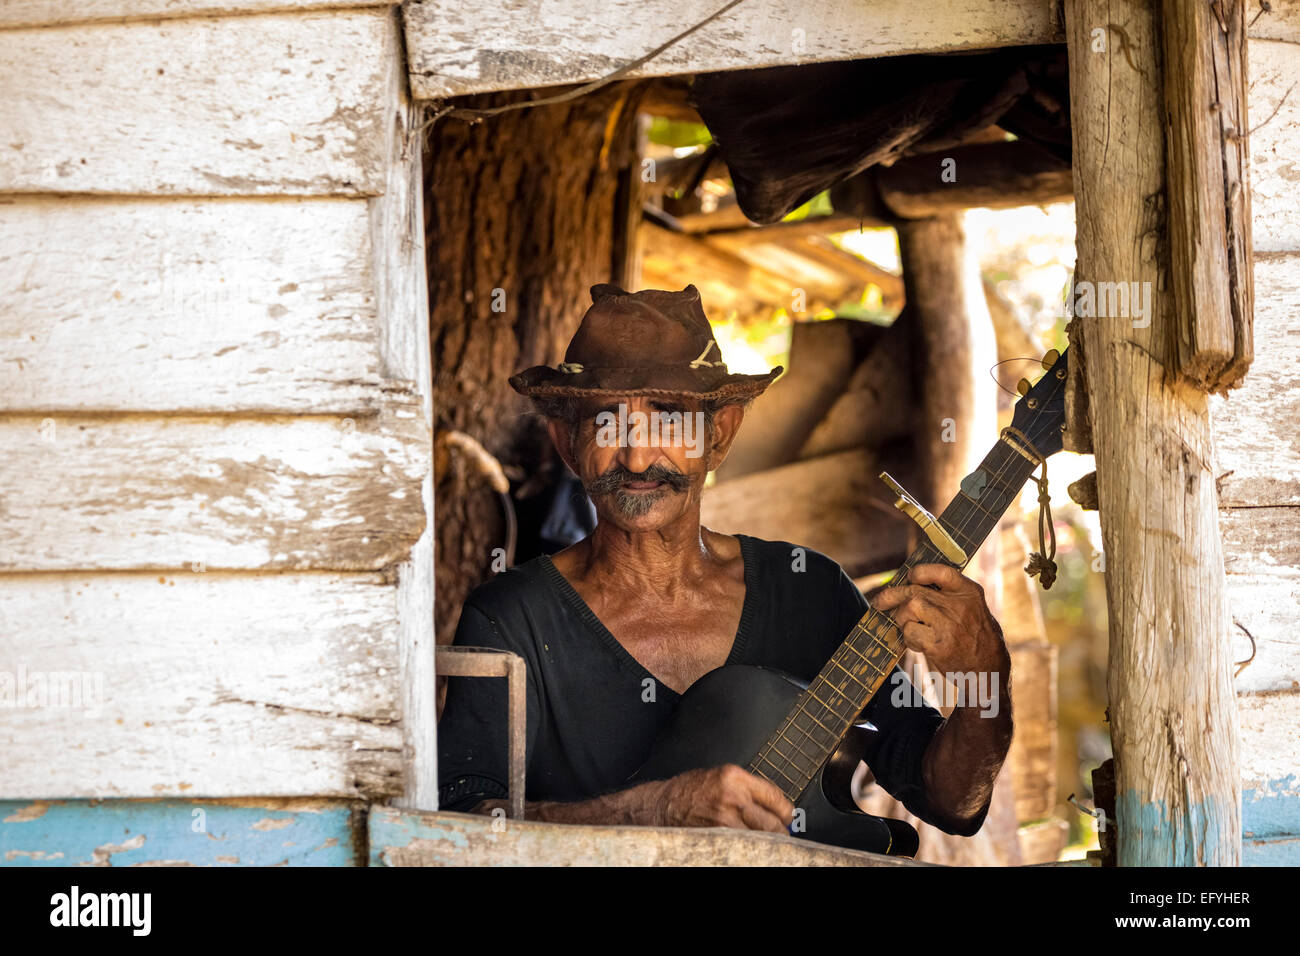 La canna da zucchero agricoltore a suonare la chitarra e la Valle de los Ingenios, Trinidad, Sancti Spiritus Provincia, Cuba Foto Stock